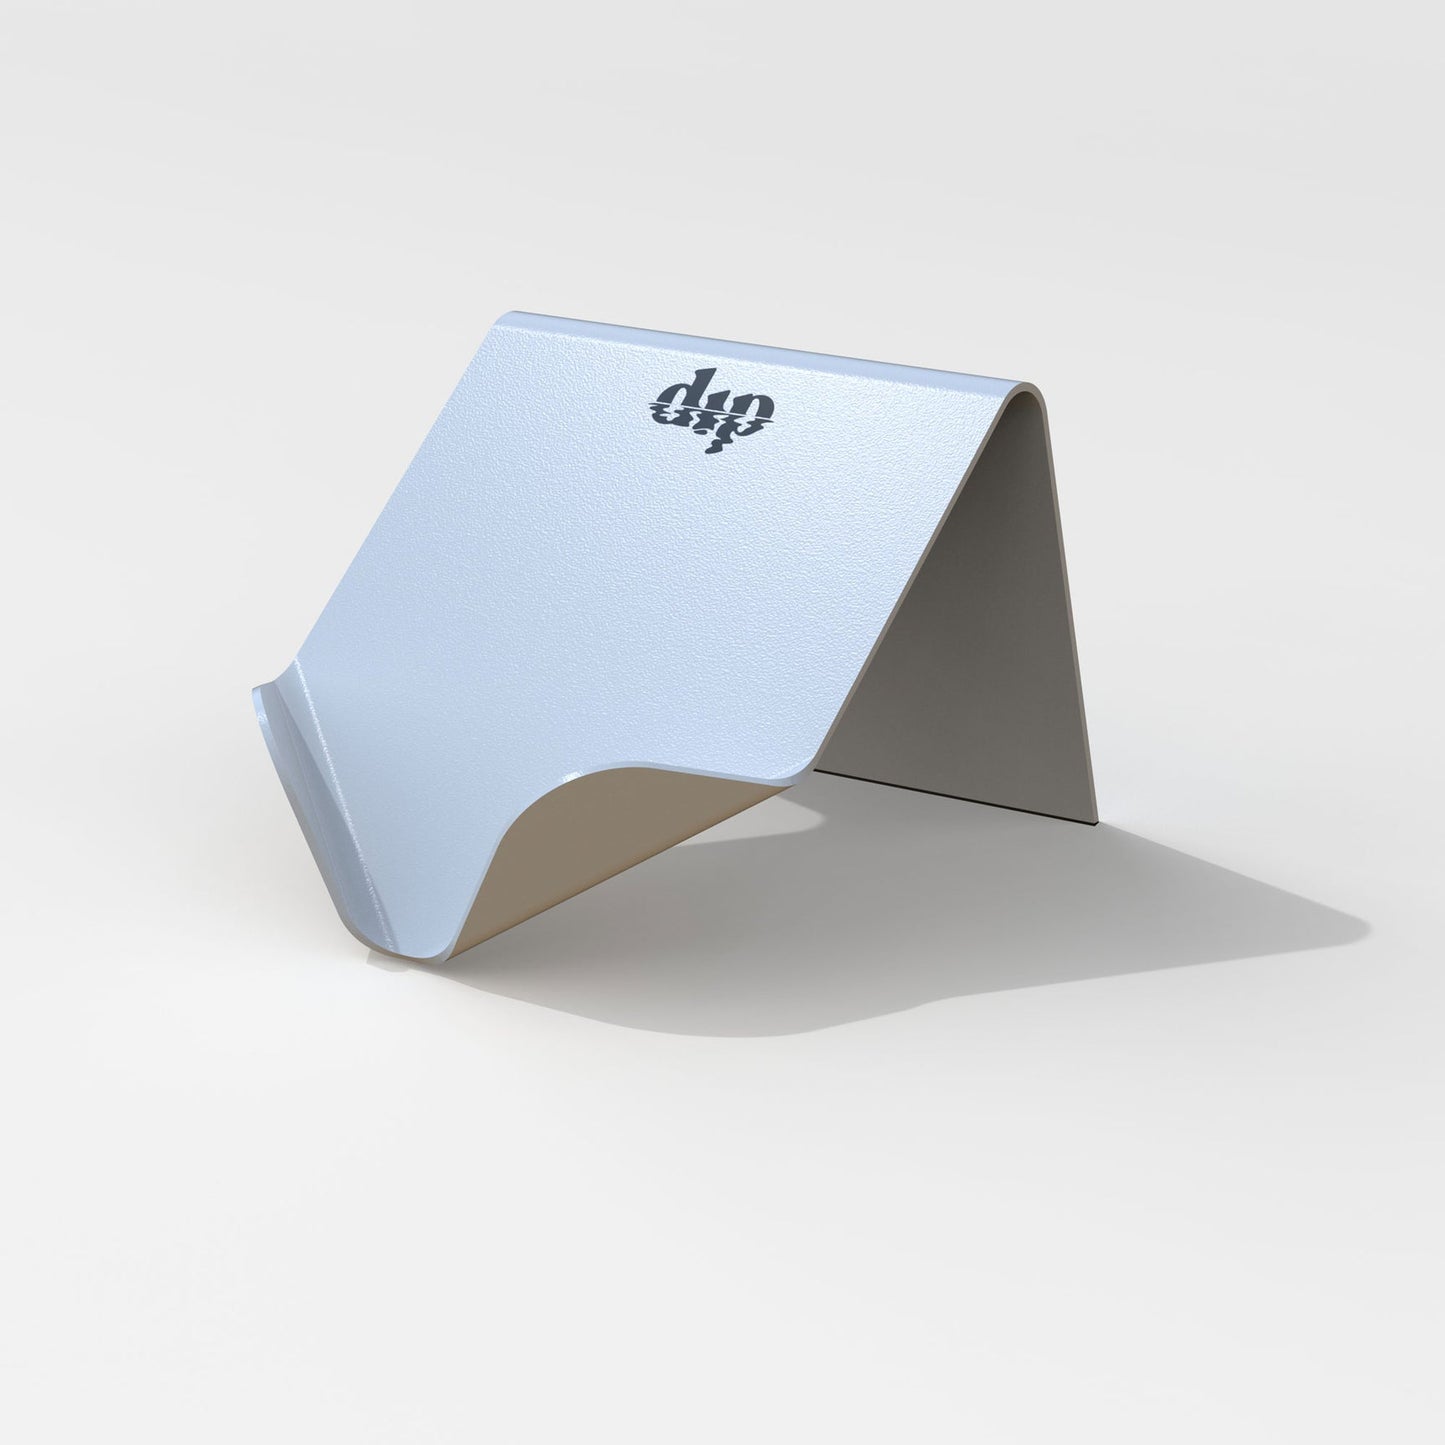 Dip Life Preserver | Draining Soap Dish